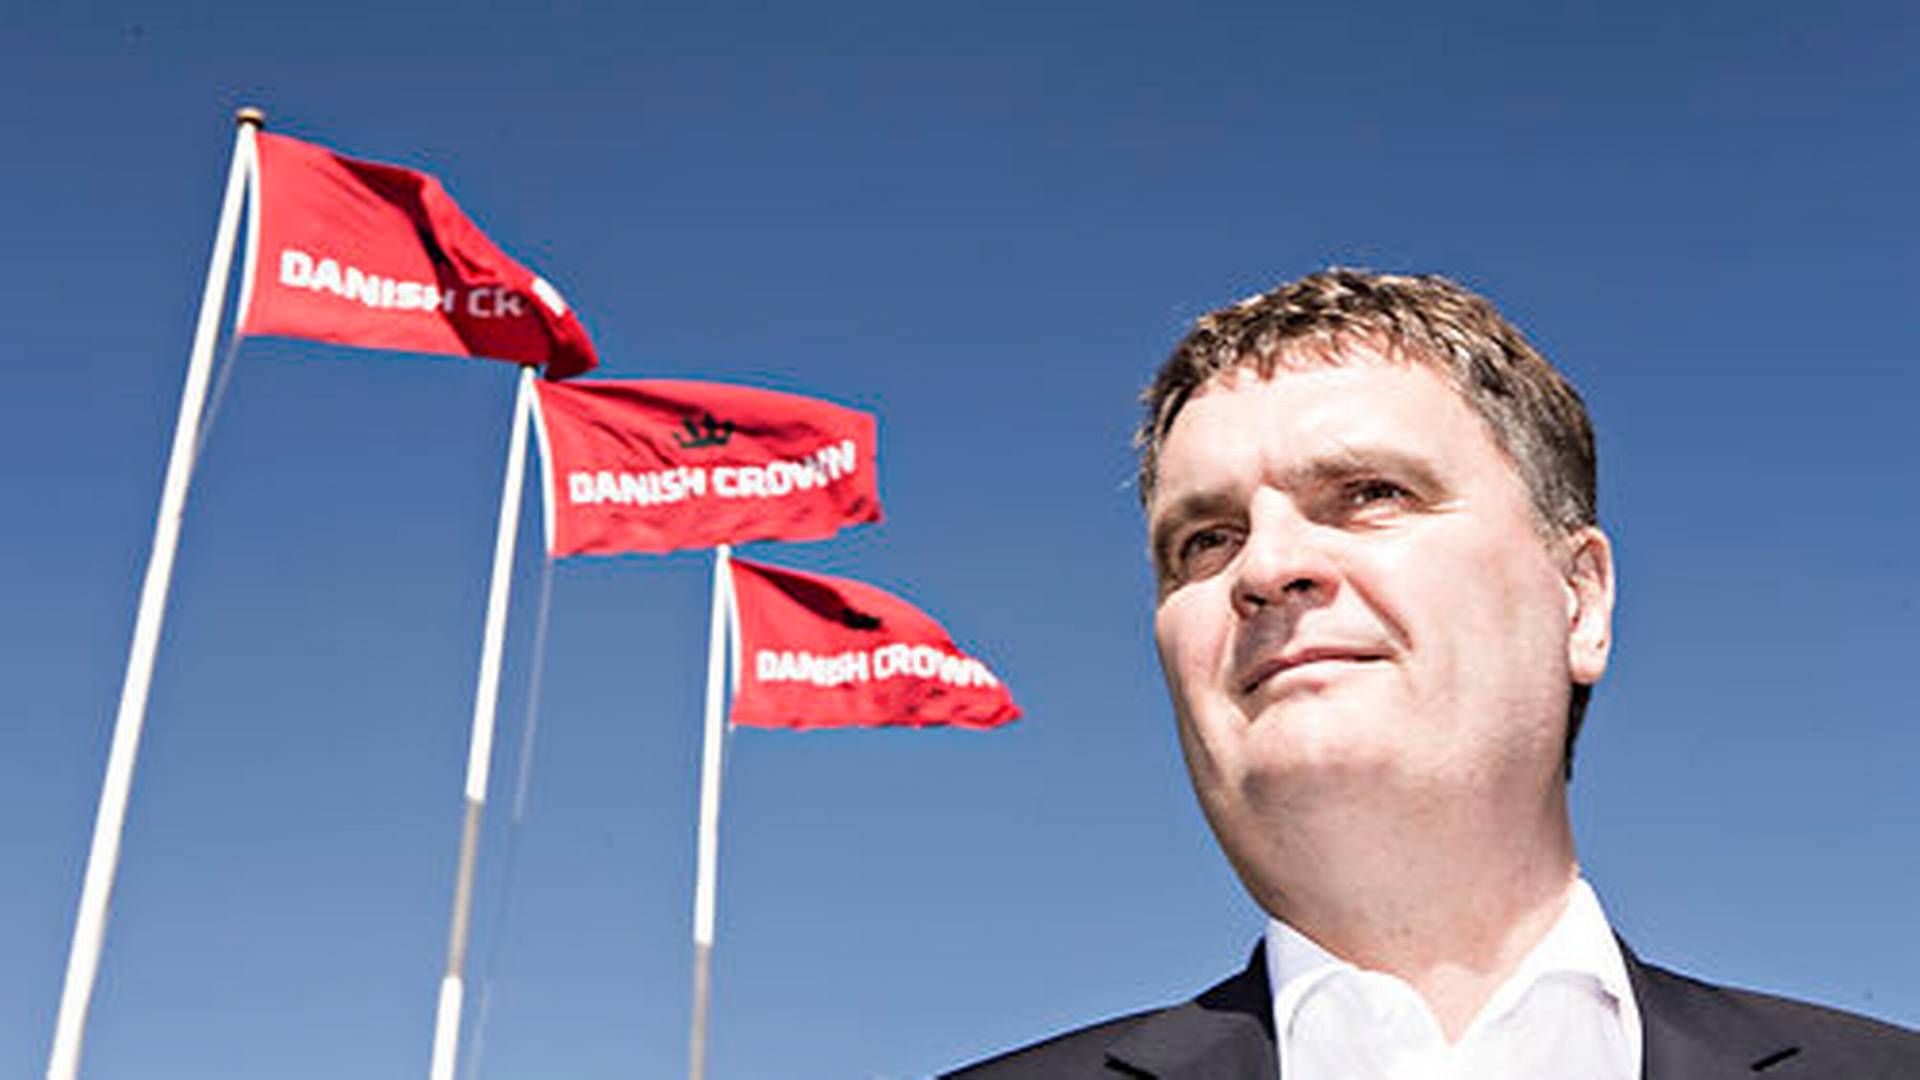 Direktør i Danish Crown, Jais Valeur, kalder beslutningen om at sælge datterselskabet for det rigtige. | Foto: Tobias Nicolai/Jyllands-Posten/Ritzau Scanpix